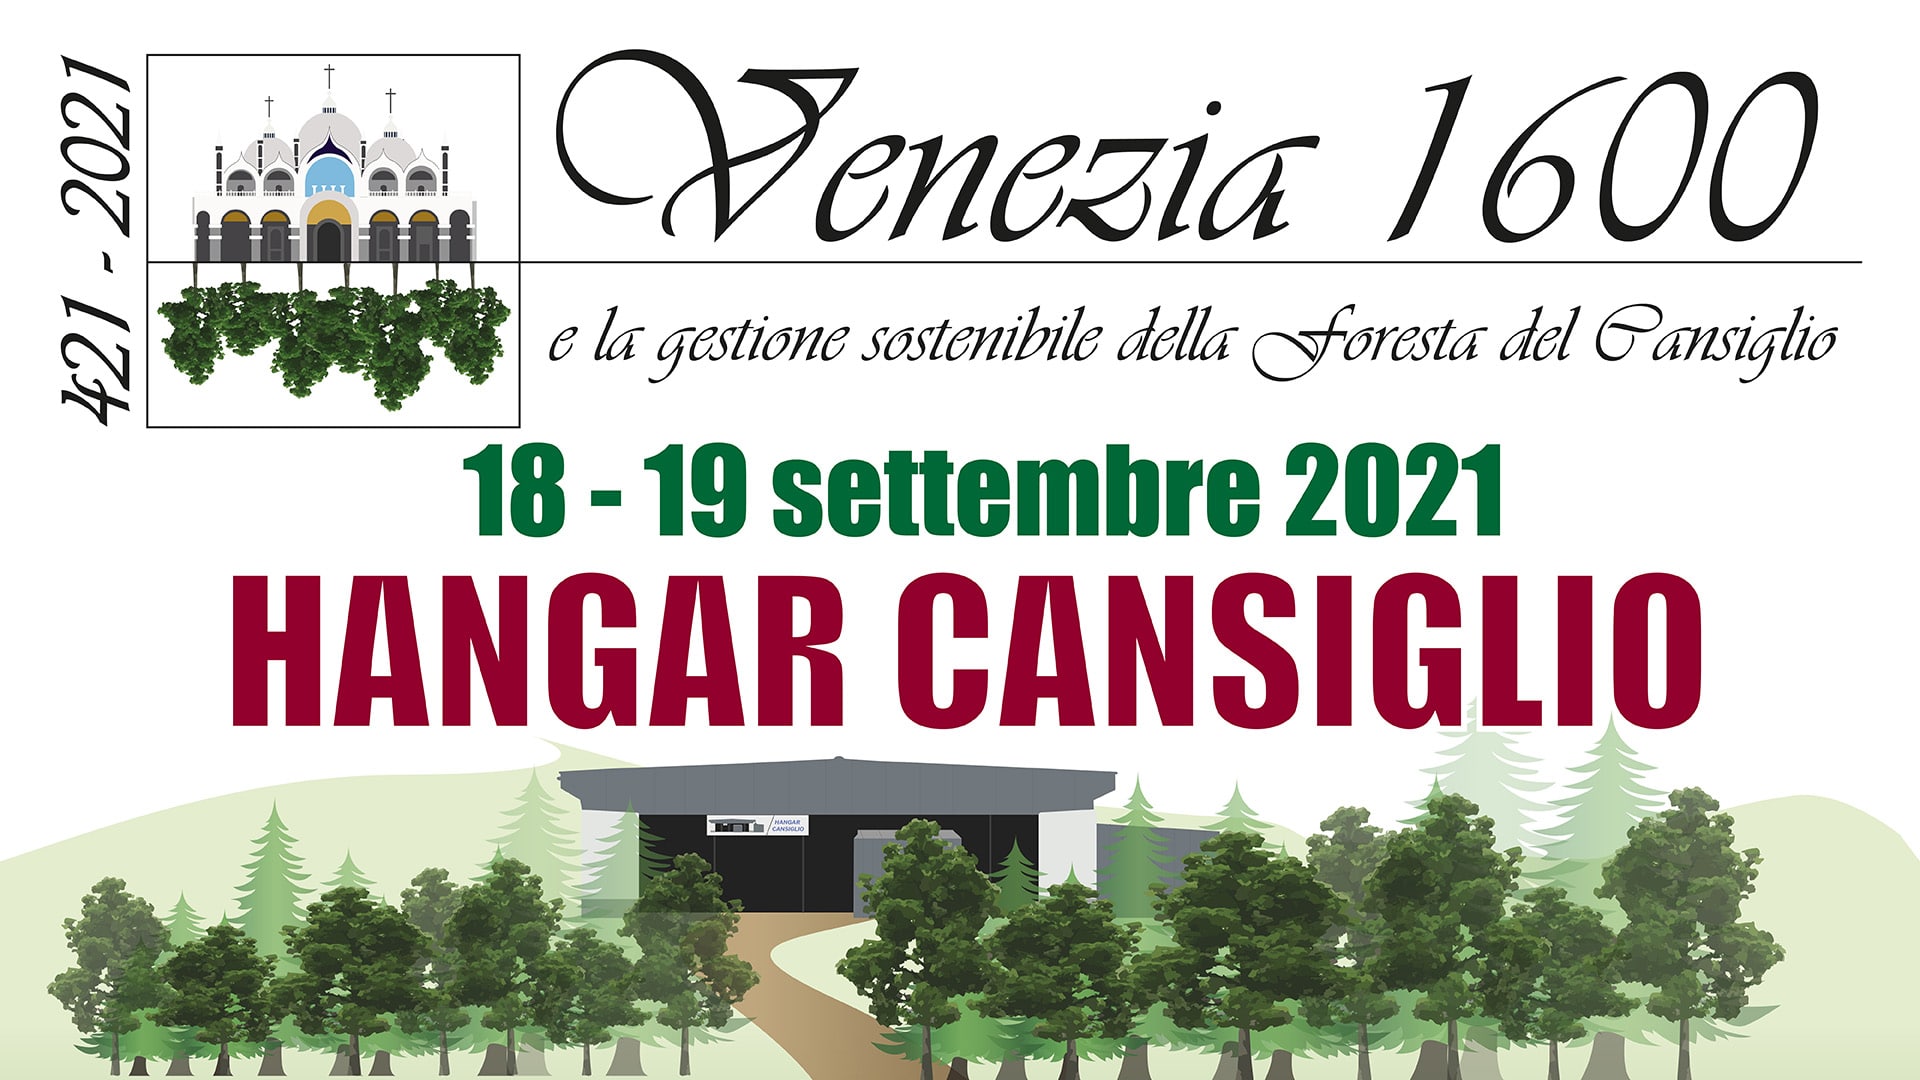 logo Venezia 1600 gestione sostenibile foresta Cansiglio